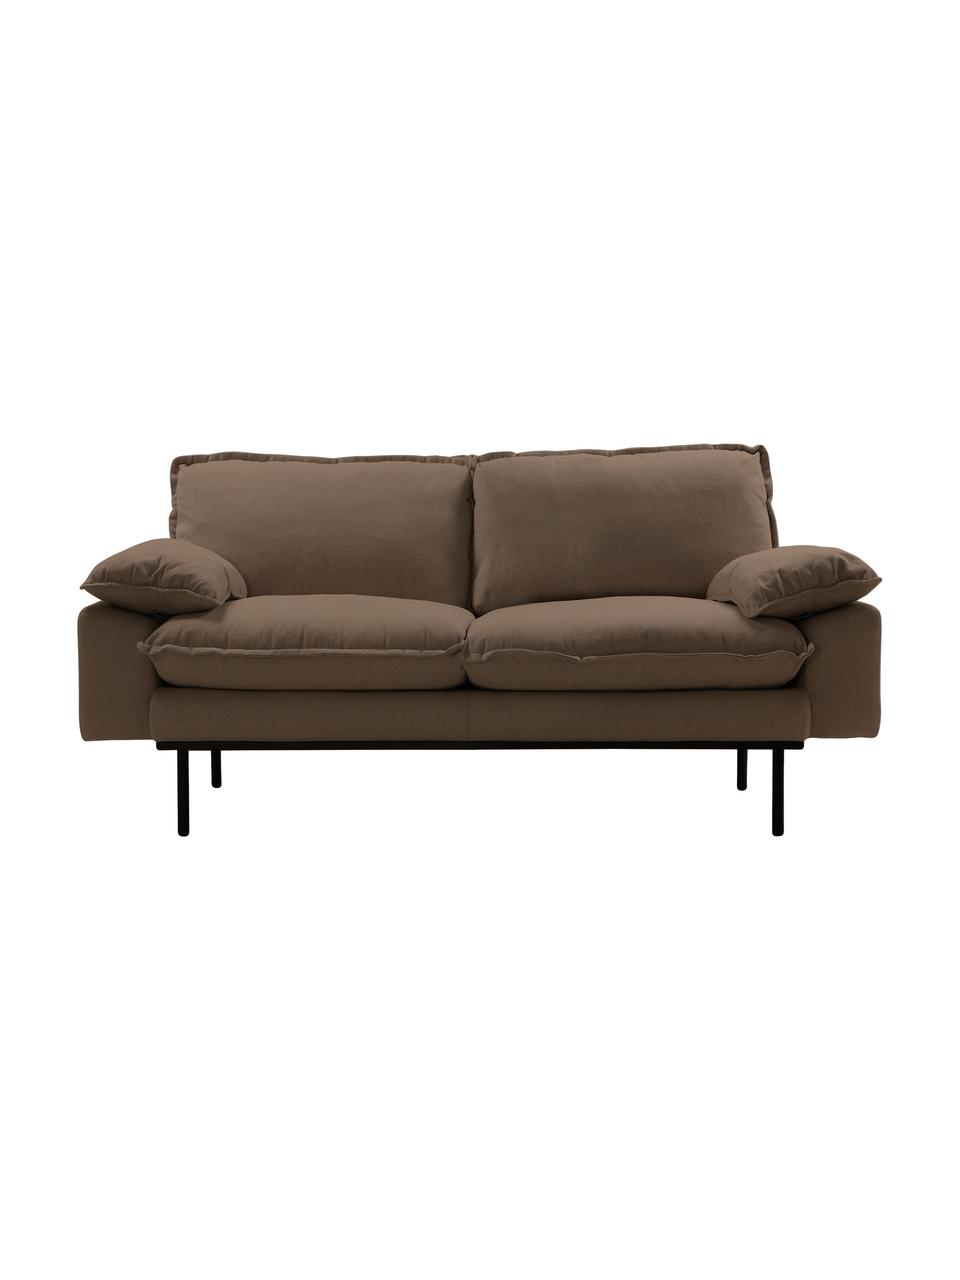 Sofa Magnolia (2-Sitzer) mit Metall-Füßen, Bezug: 63% Baumwolle, 37% Leinen, Füße: Metall, pulverbeschichtet, Stoff Braun, B 175 x T 94 cm